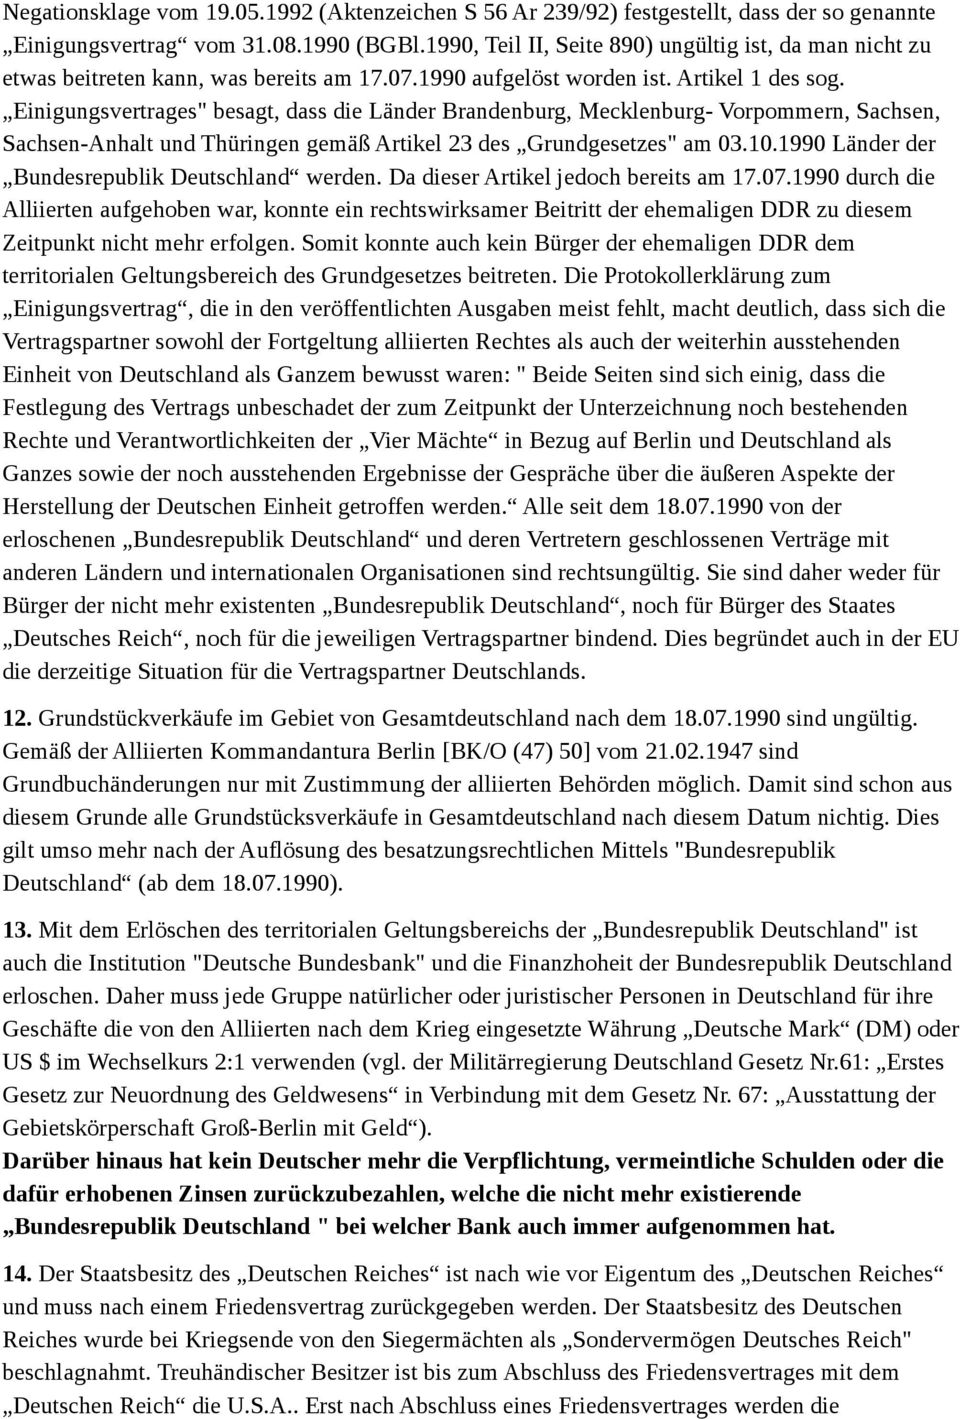 Einigungsvertrages" besagt, dass die Länder Brandenburg, Mecklenburg- Vorpommern, Sachsen, Sachsen-Anhalt und Thüringen gemäß Artikel 23 des Grundgesetzes" am 03.10.